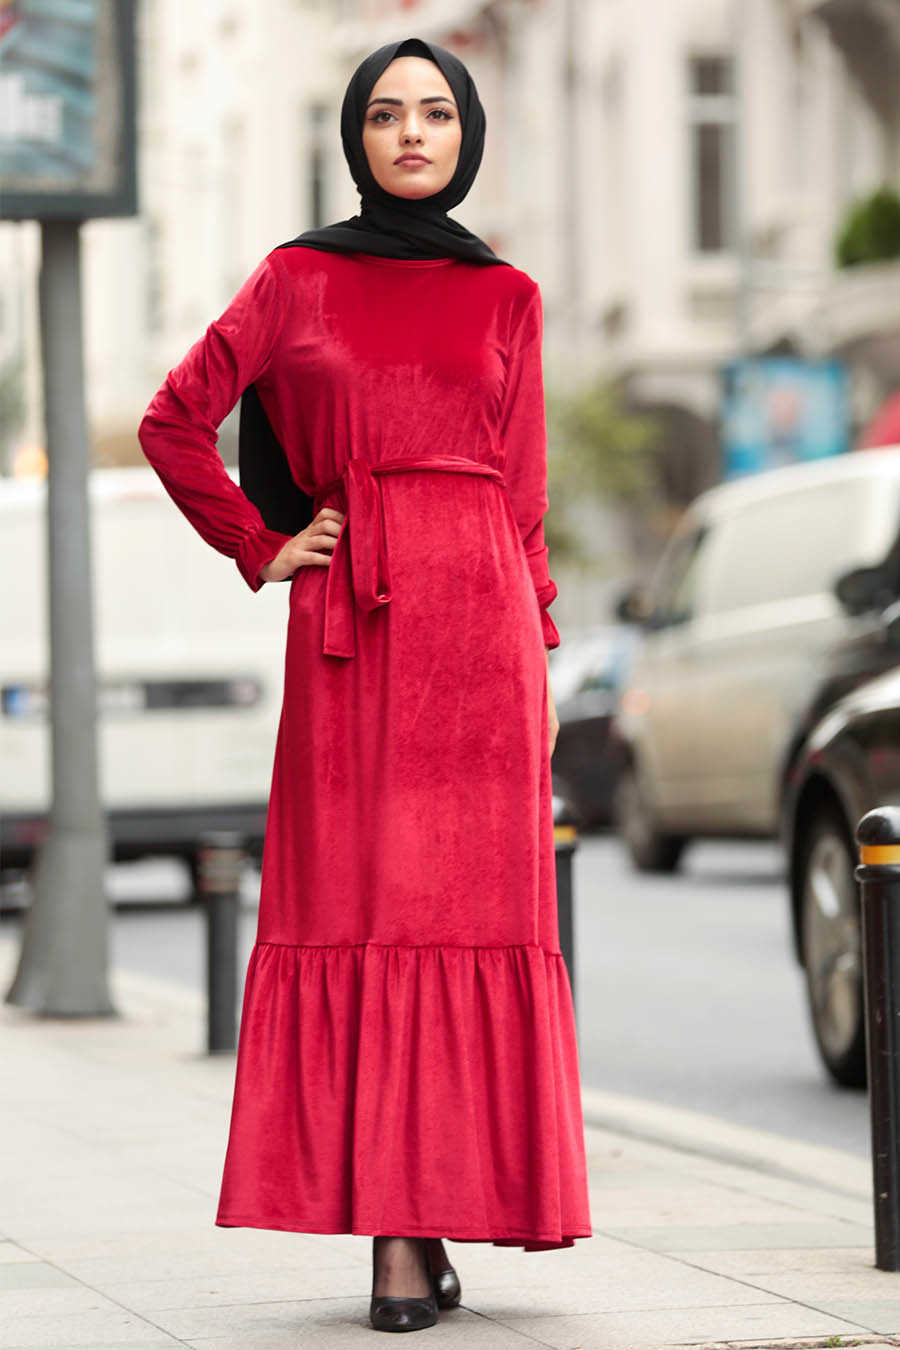 Red Hijab Dress 4010K - Neva-style.com